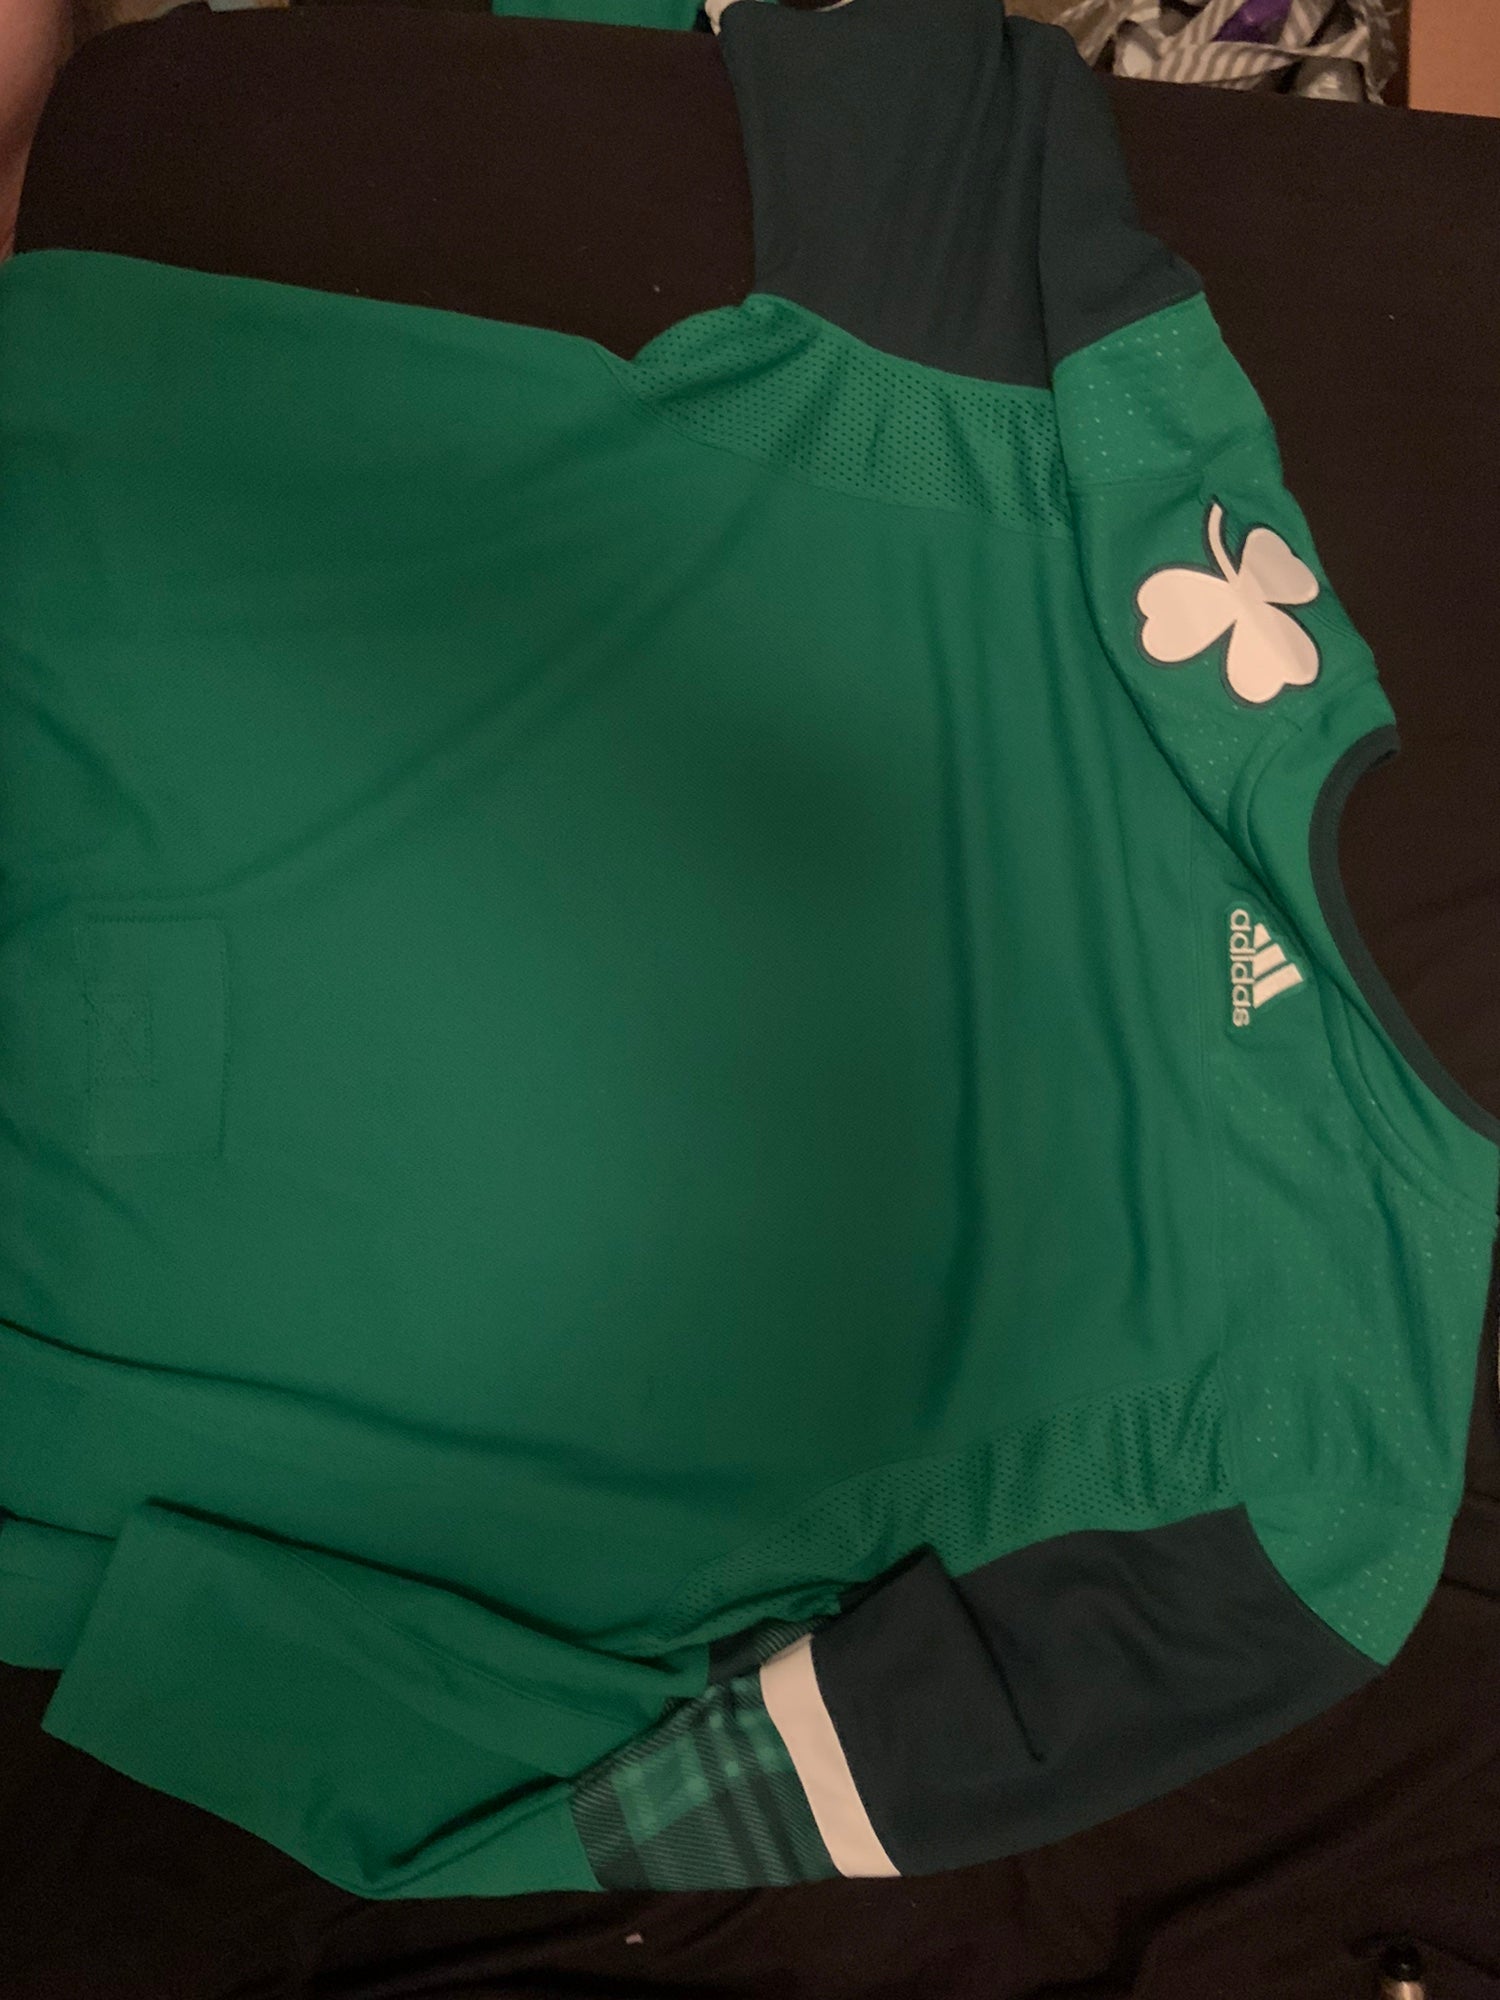 PHOTOS: VGK reveal St. Patrick's Day jerseys